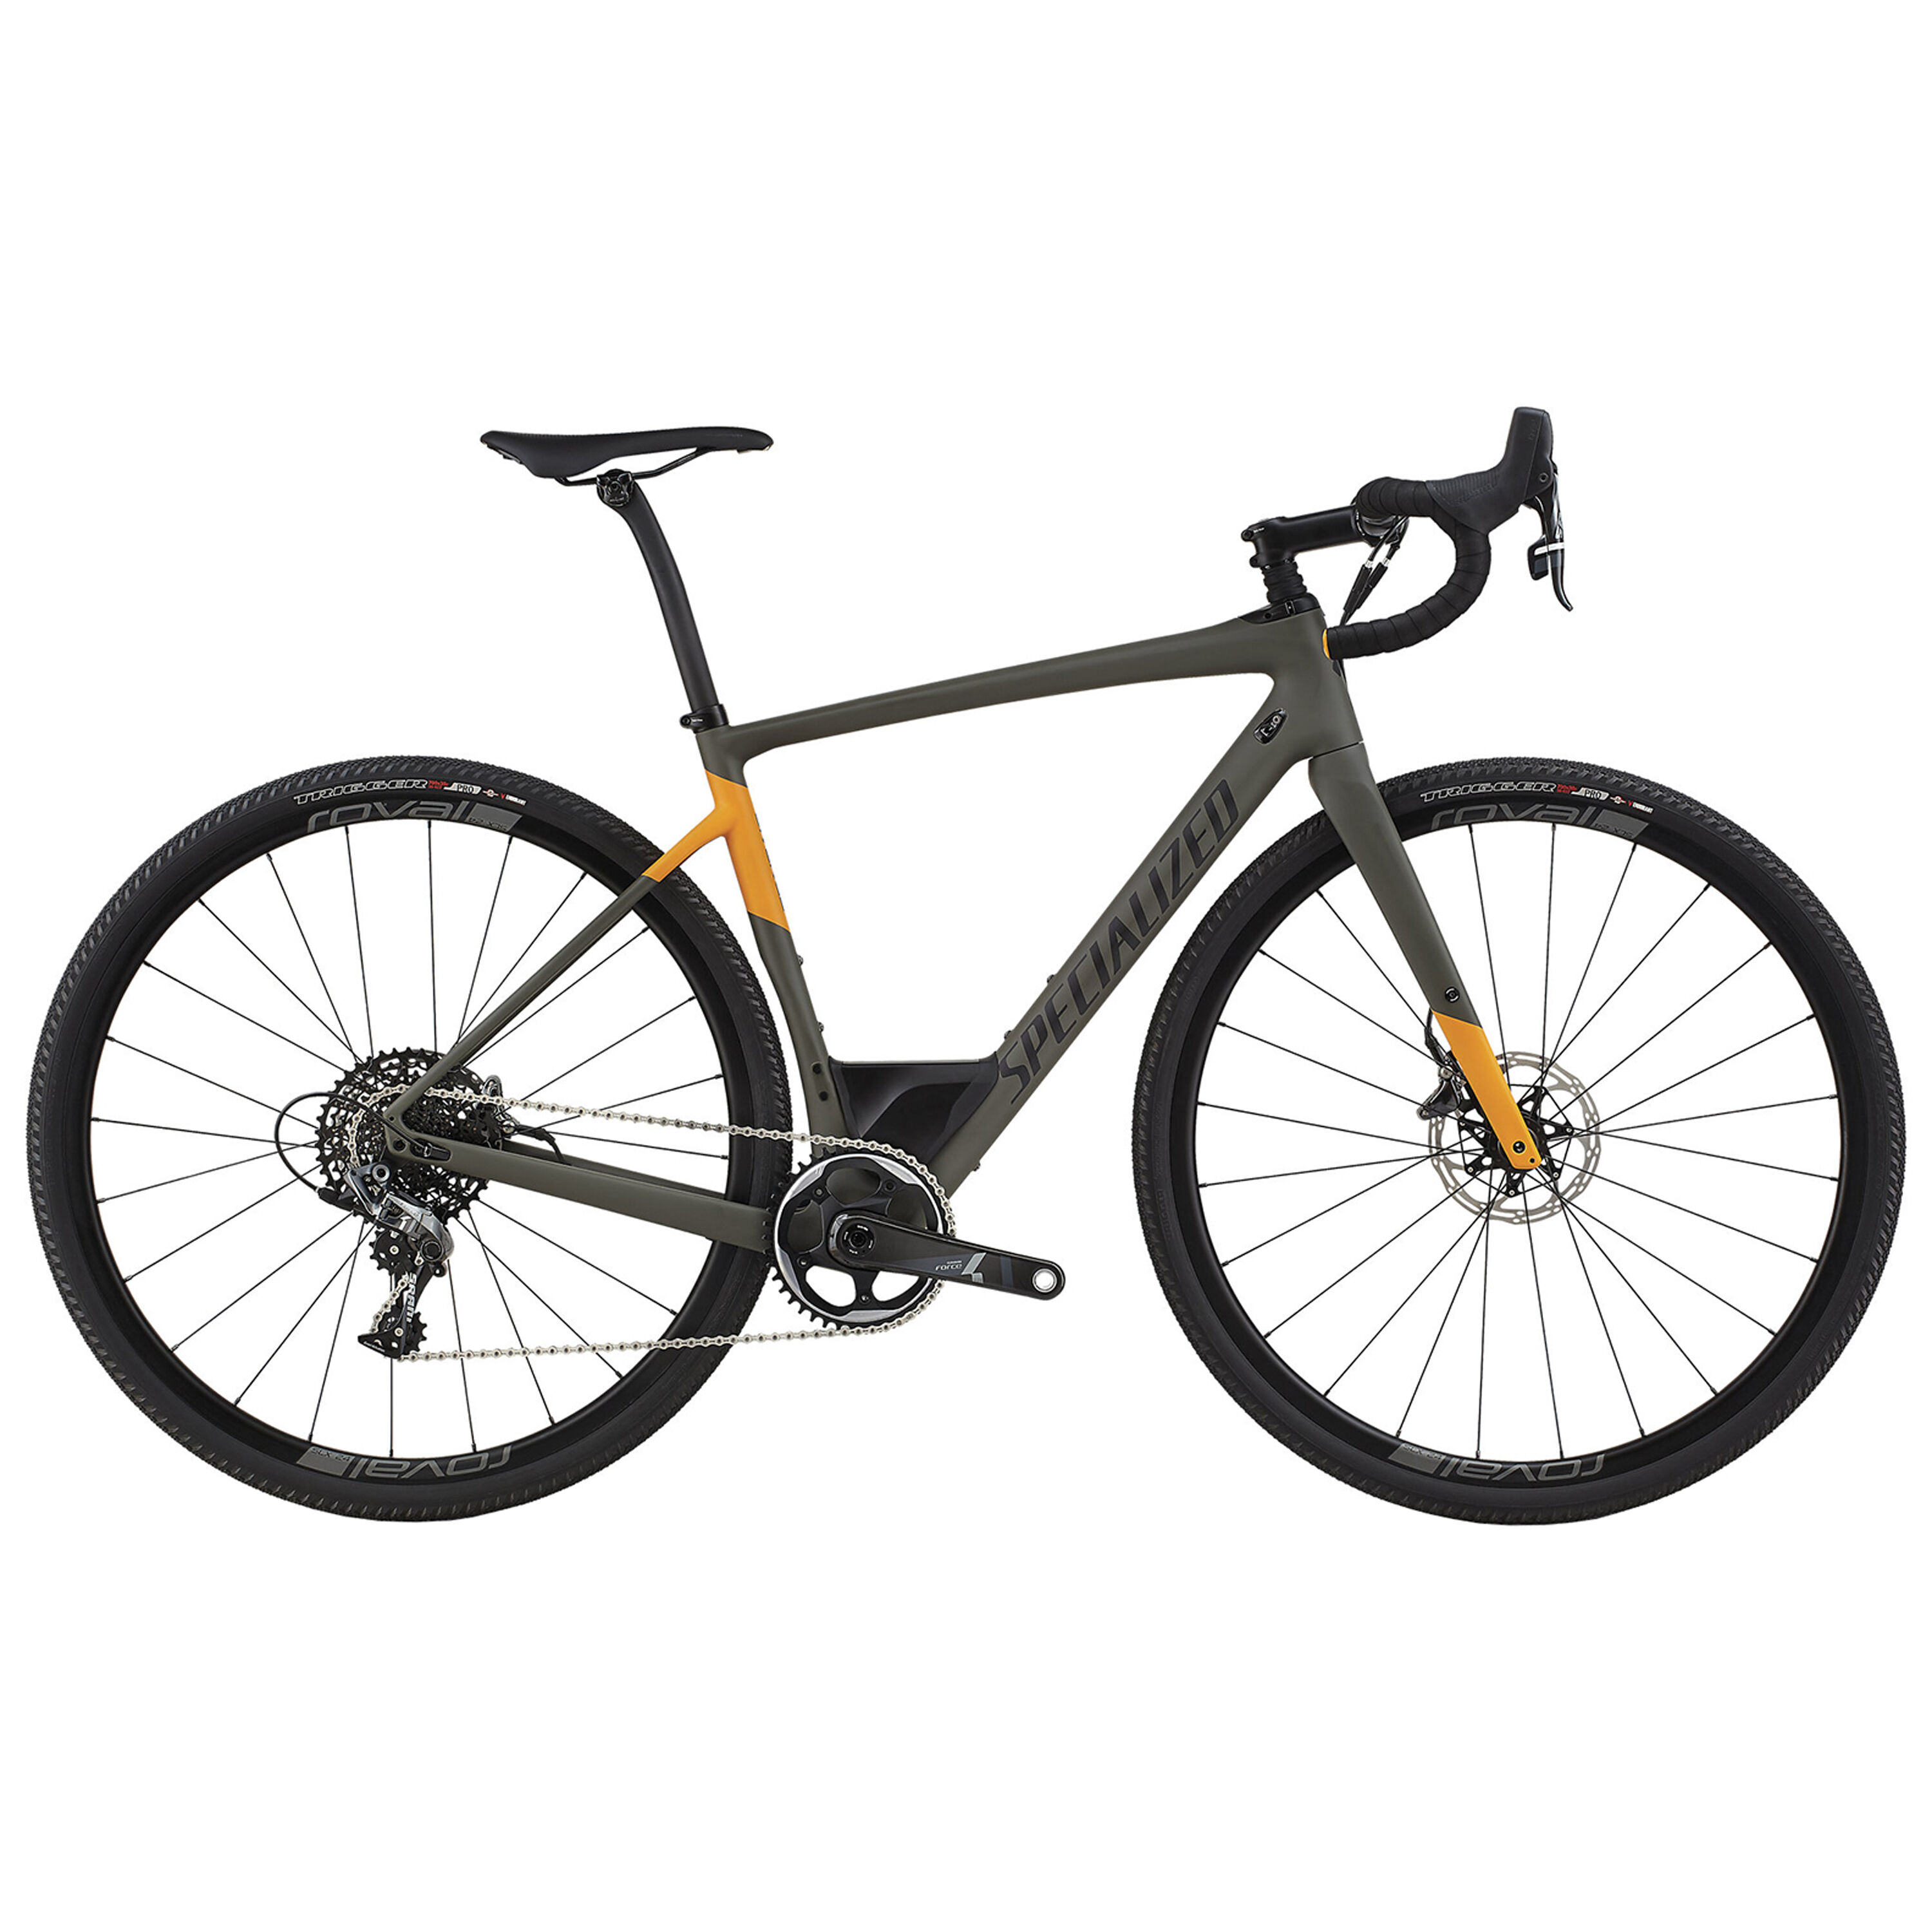 Specialized diverge. Diverge Comp Carbon 2018. Specialized велосипеды шоссейные на прозрачном фоне. Шоссейный велосипед specialized купить.